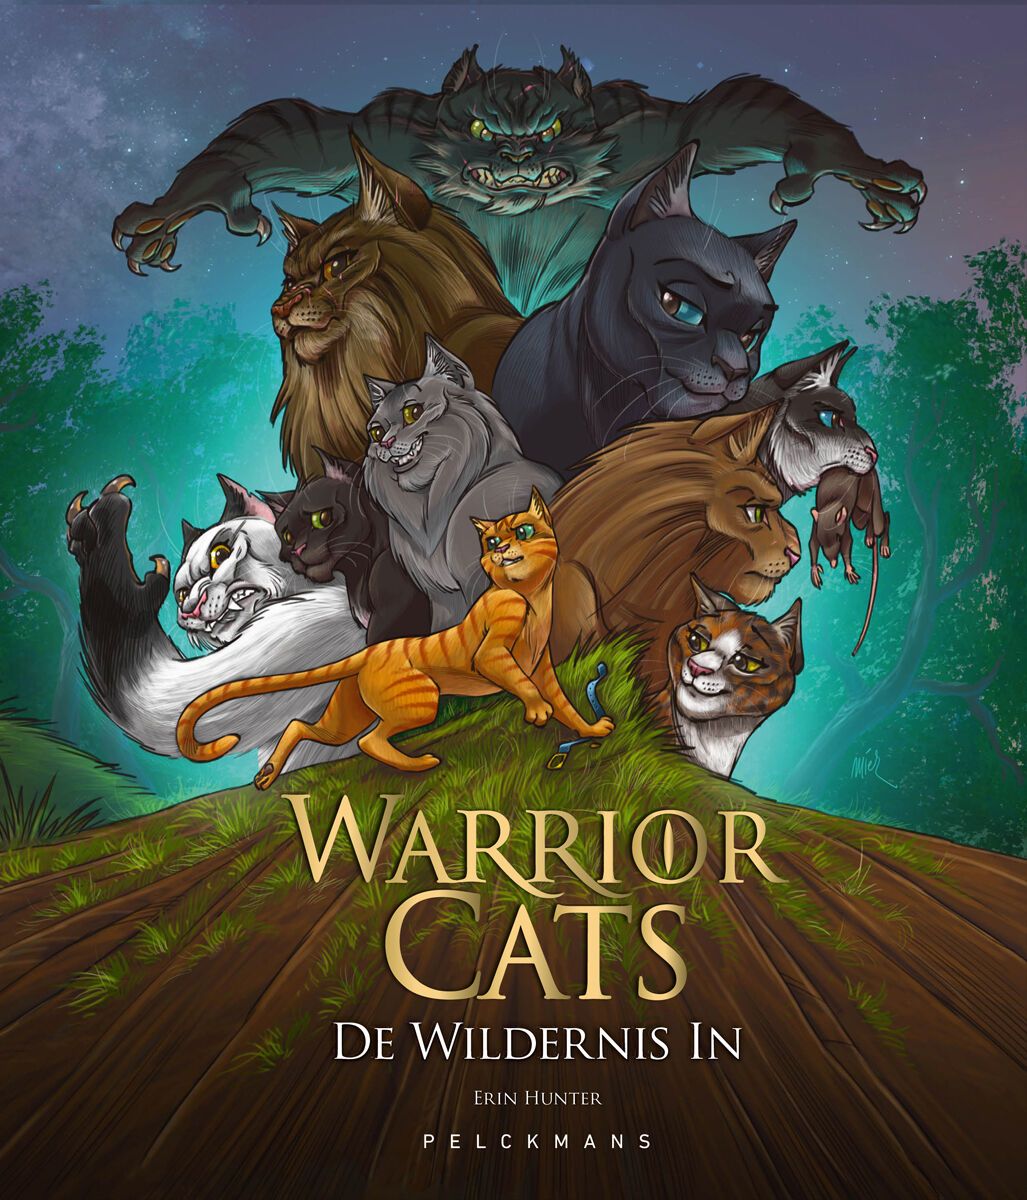 Warrior Cats: De wildernis in